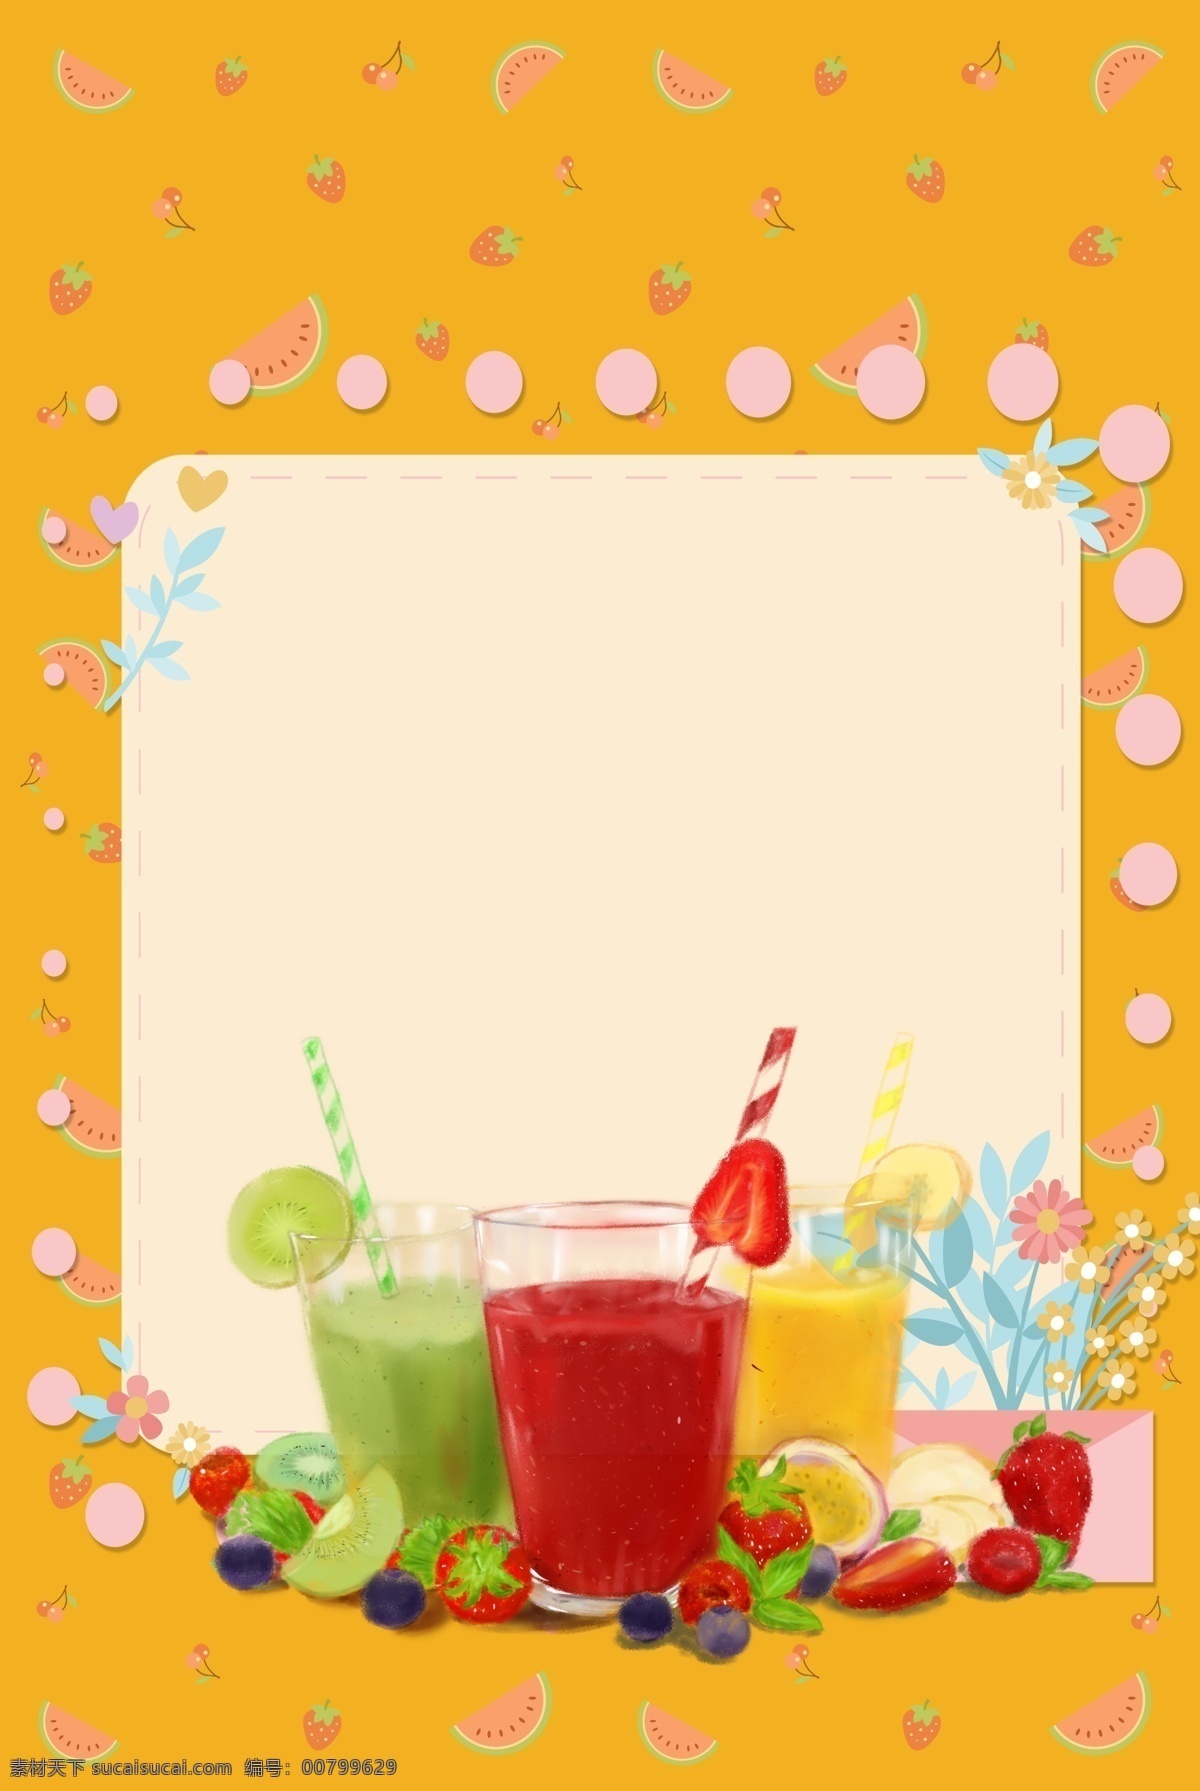 橘 色 水果 果汁 背景 多种水果 猕猴桃汁 玻璃杯 百香果 草莓汁 冰爽 夏天 蓝莓 饮料